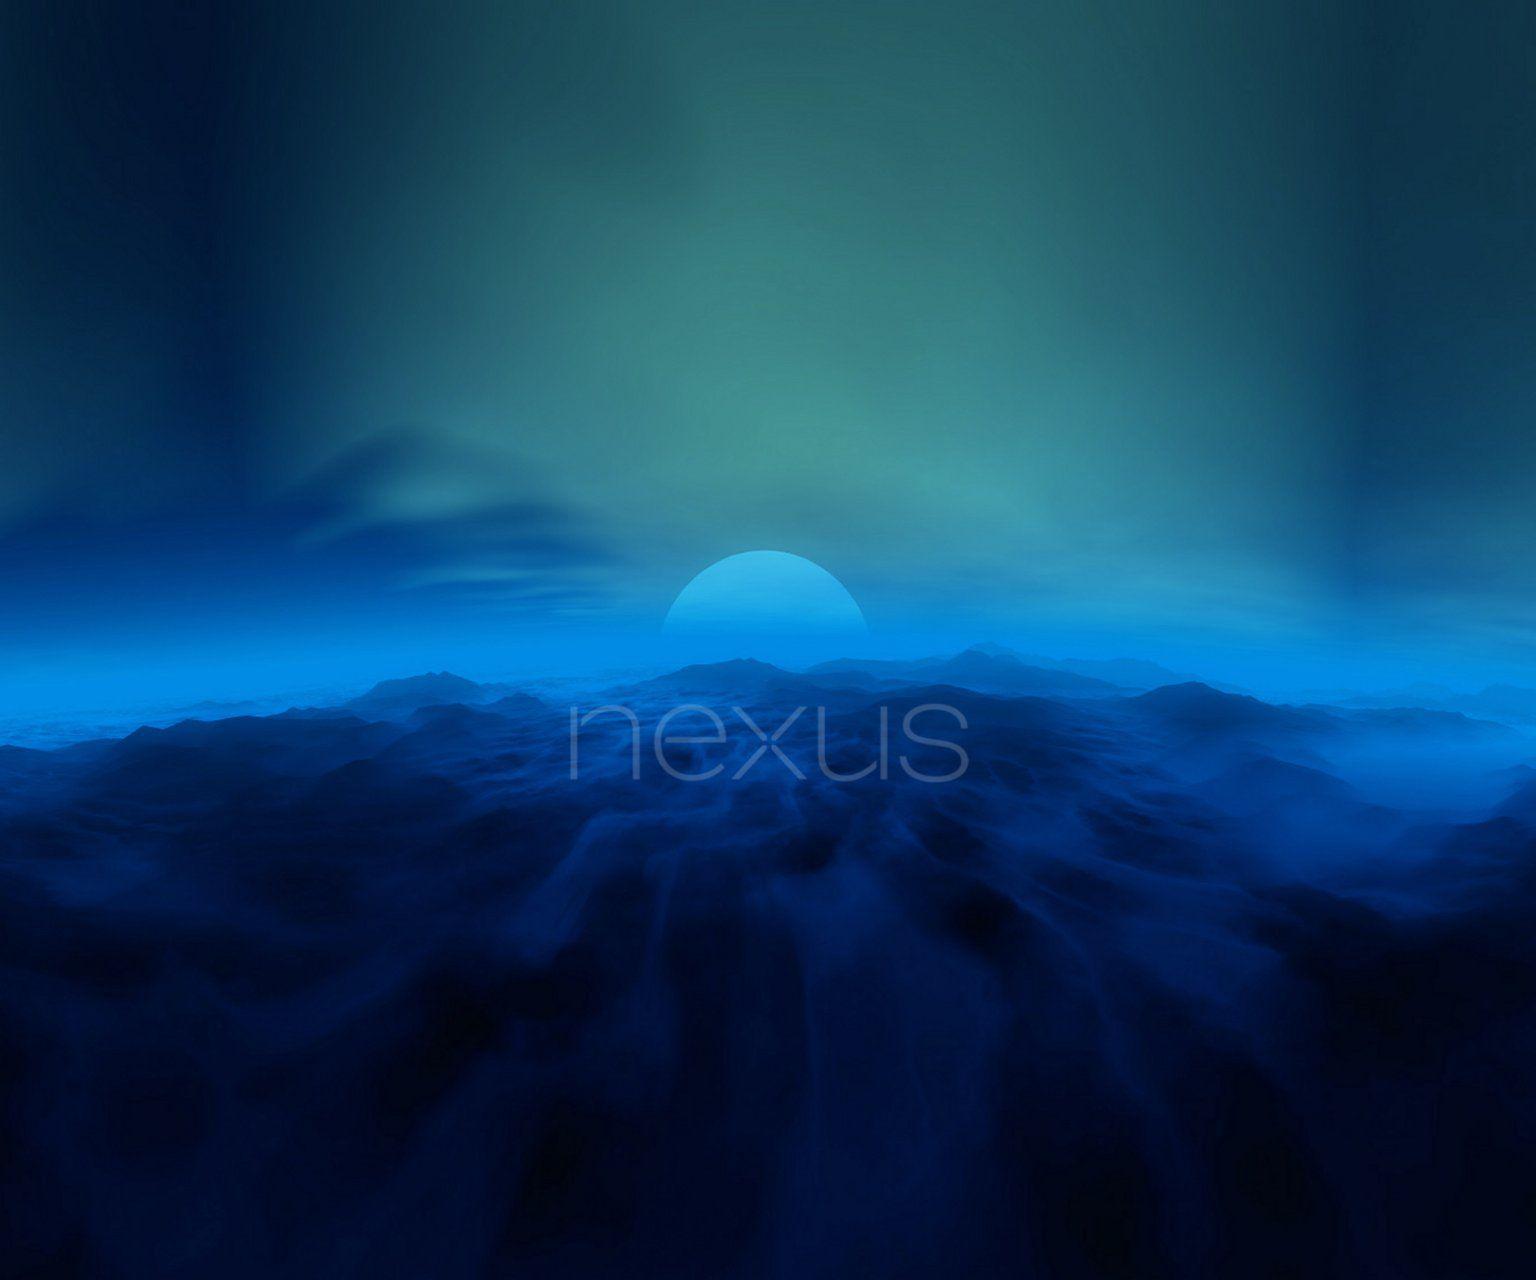 Nexus Wallpapers